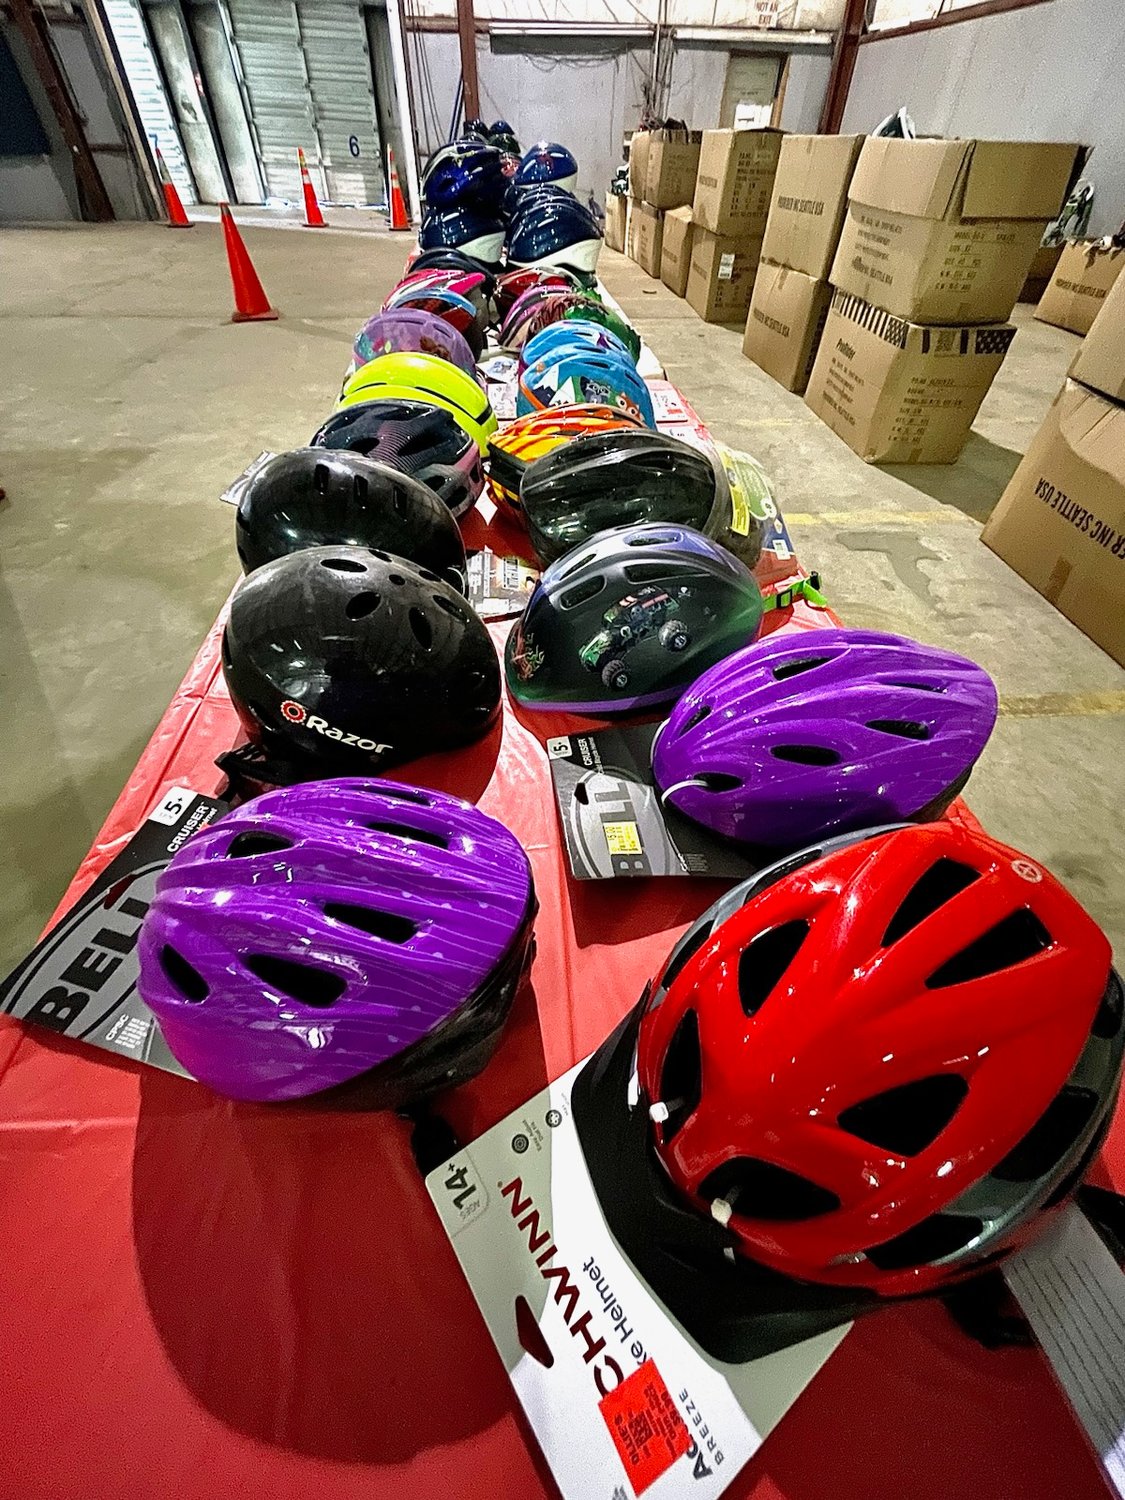 Donated bike helmets line a table.